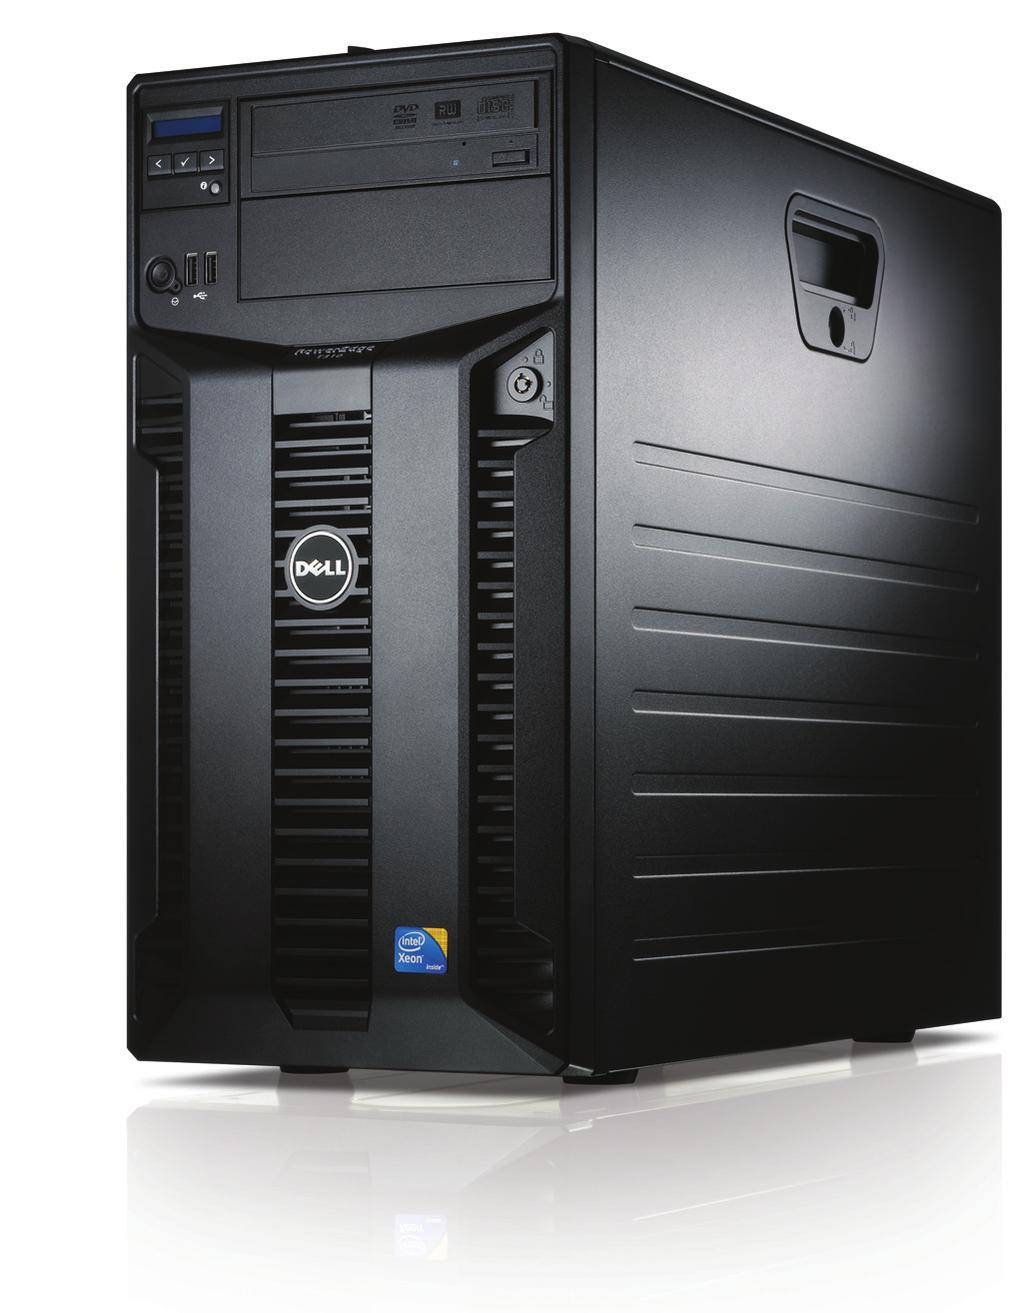 Serveurs tour PowerEdge Qualité sans précédent Dell propose une gamme complète de serveurs tour offrant une grande variété en termes de performances et de fonctionnalités, pour vous fournir une base